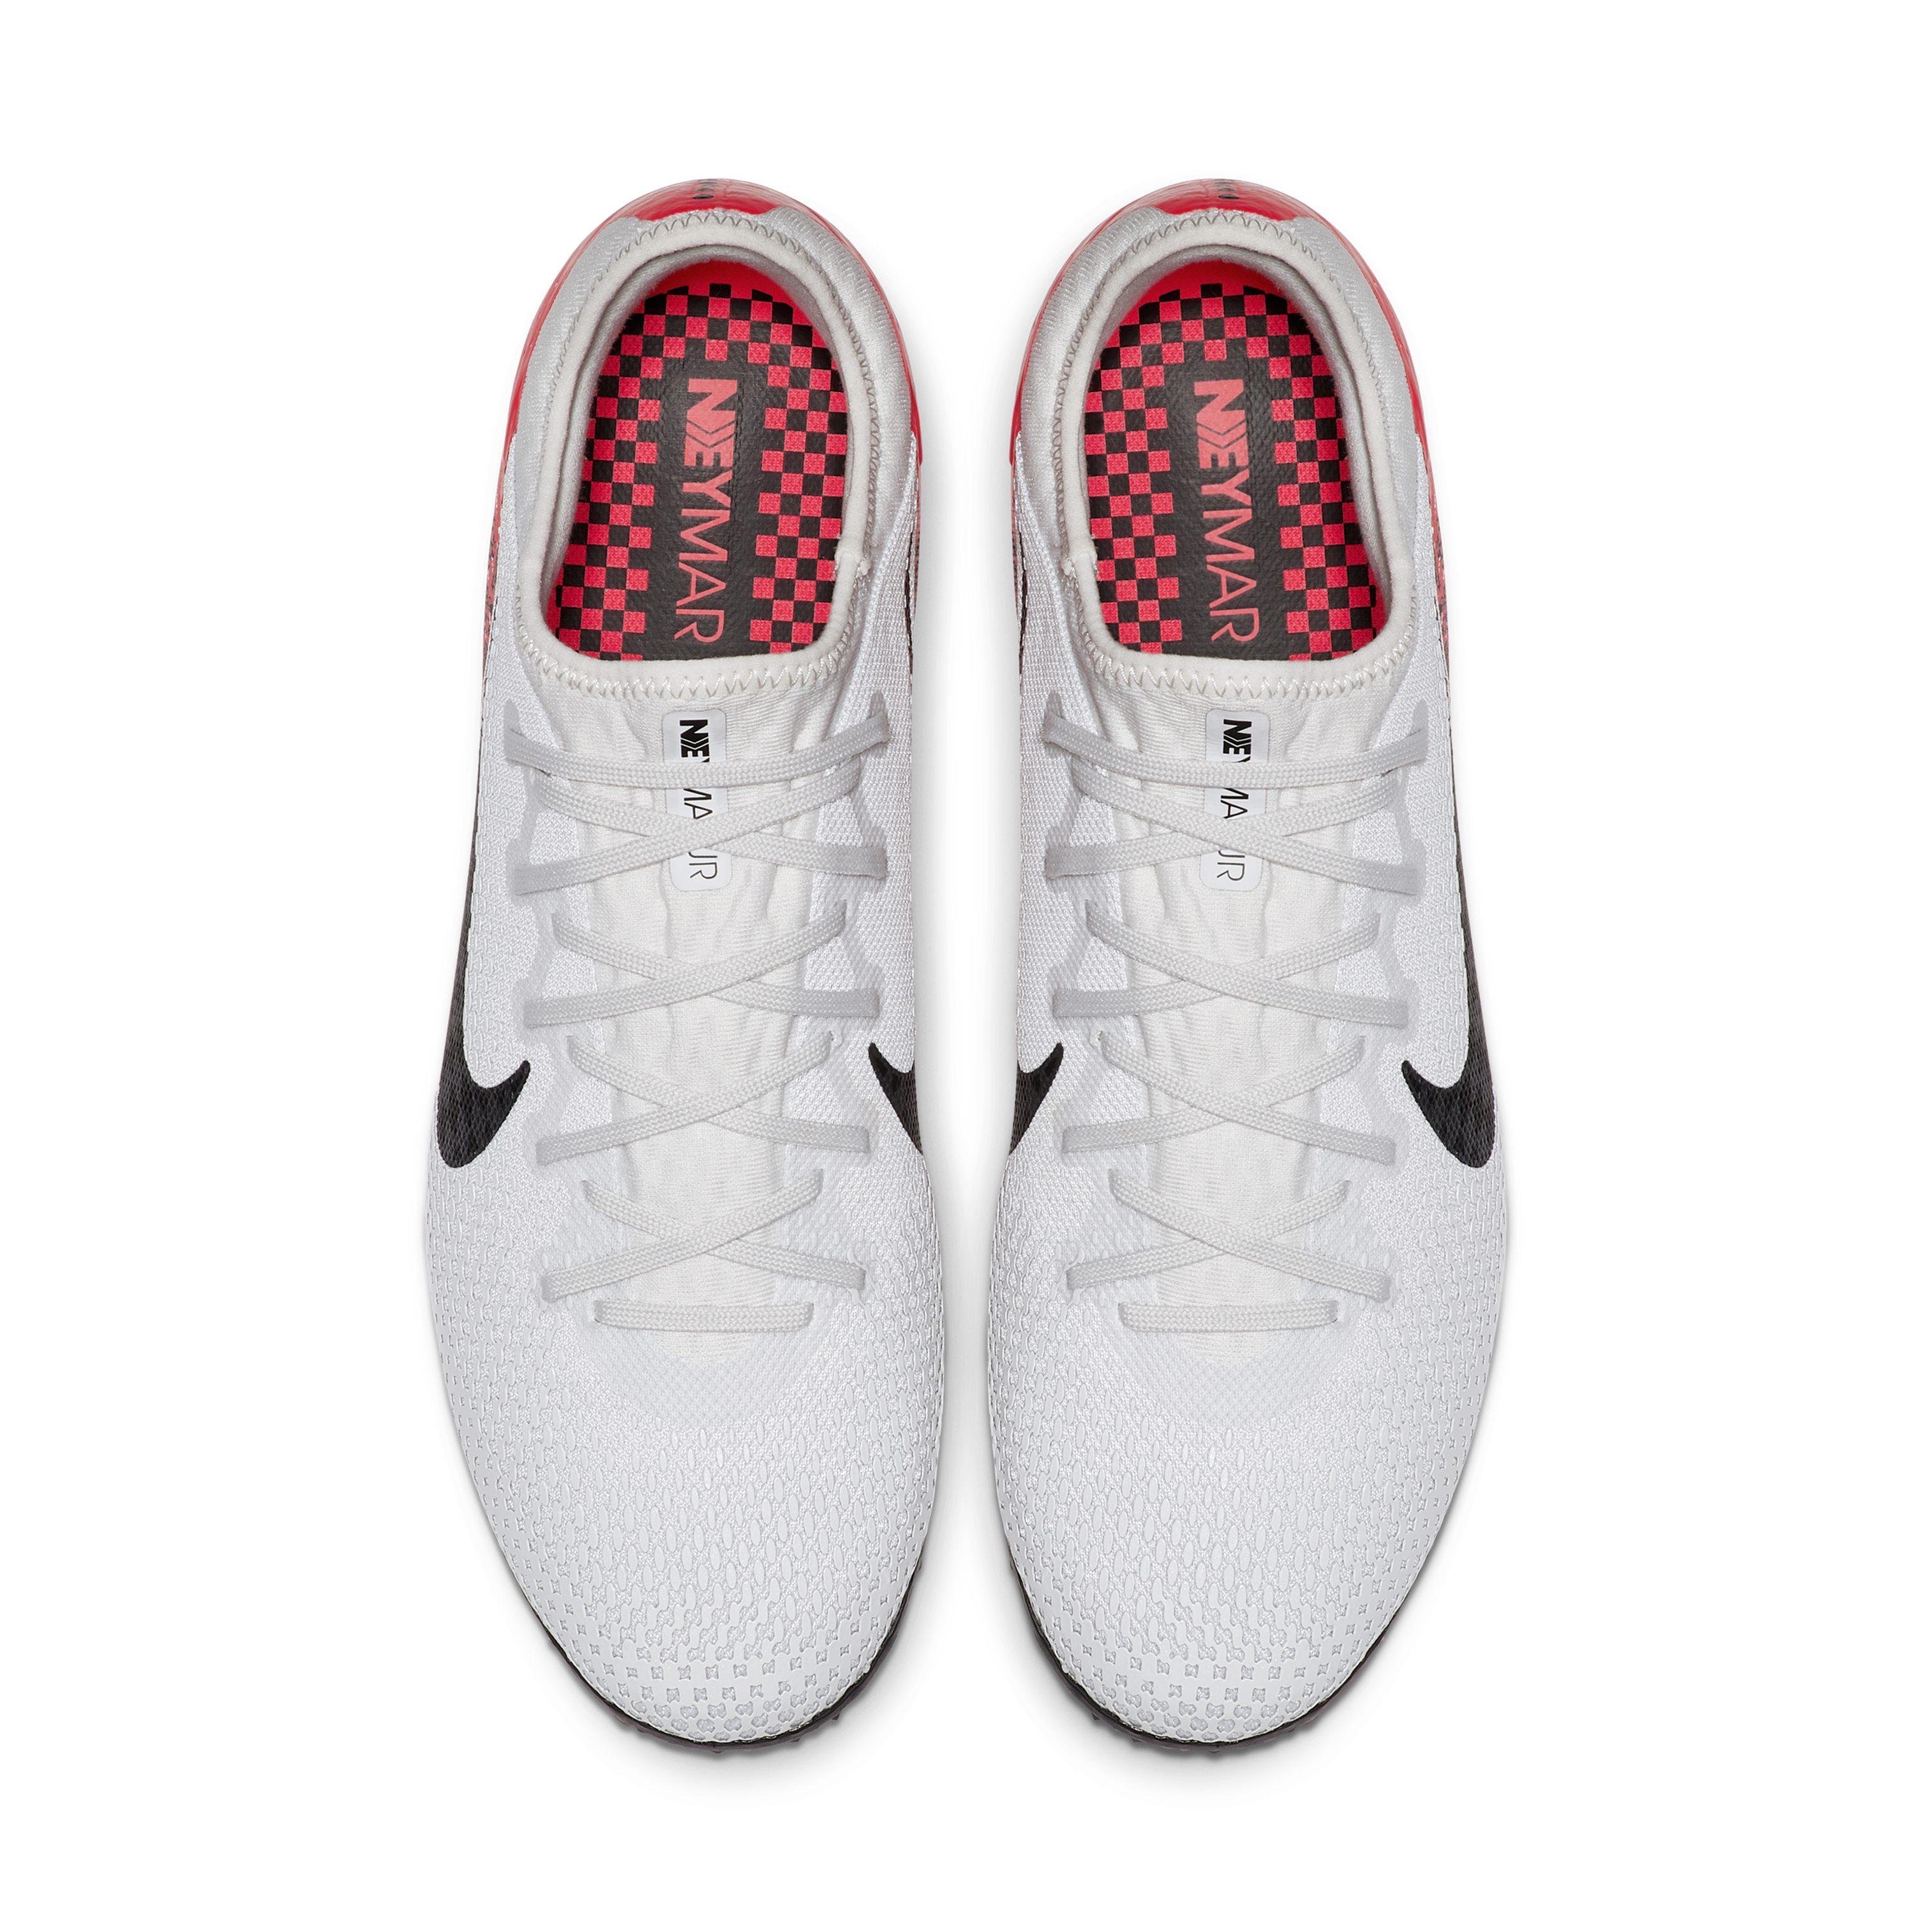 Nike Men's's Hypervenomx Phelon 3 Df Tf Football Boots